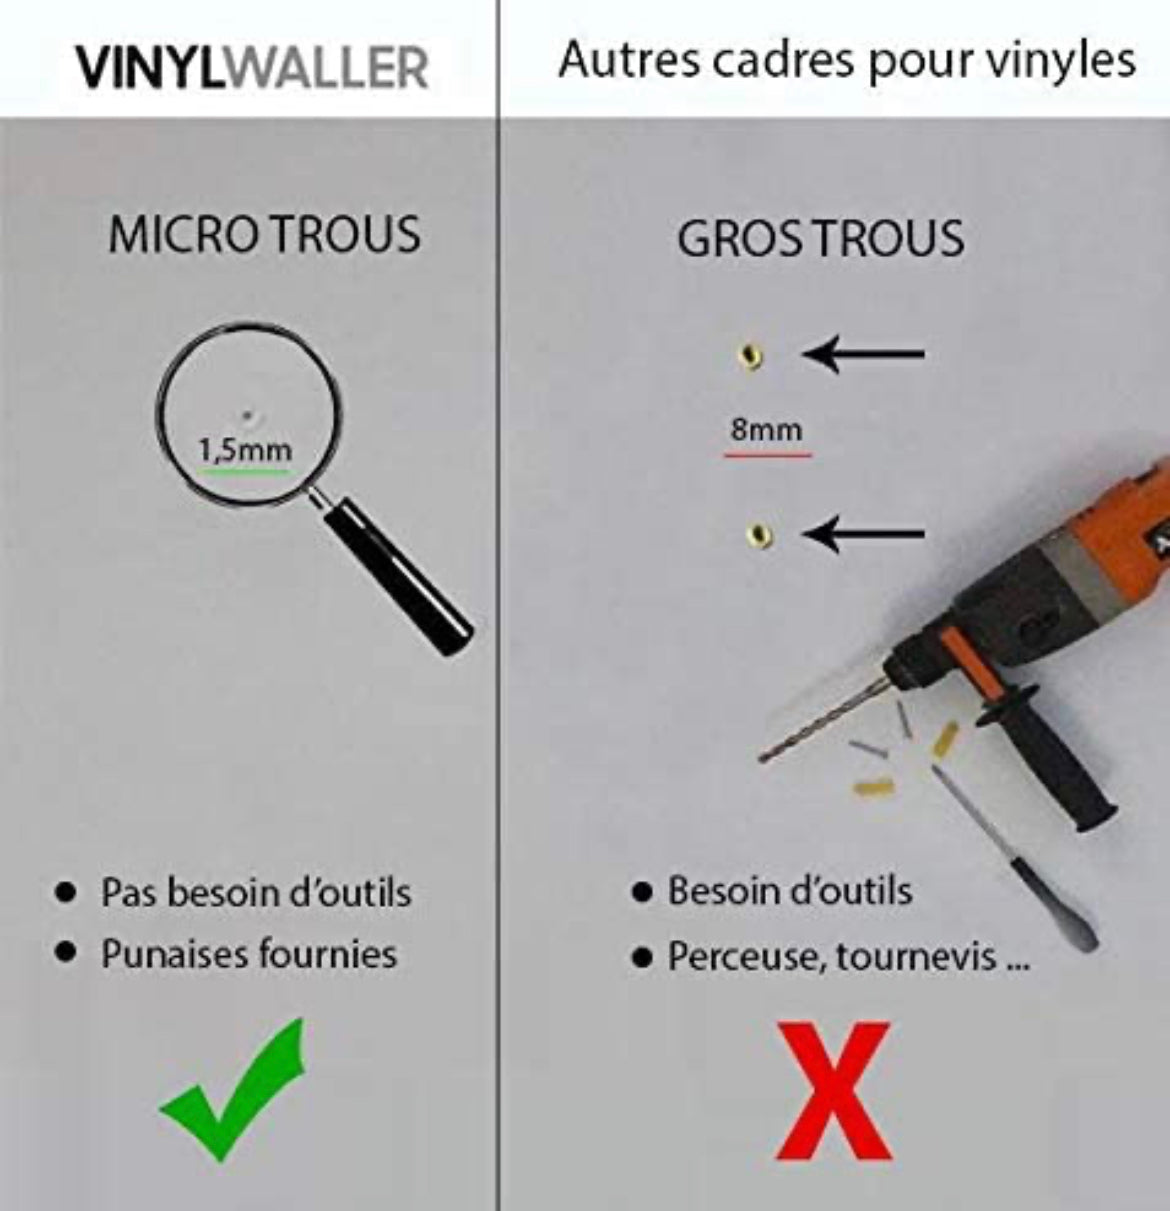 Vinyl-Waller - 8 cornici/supporto per i vinili